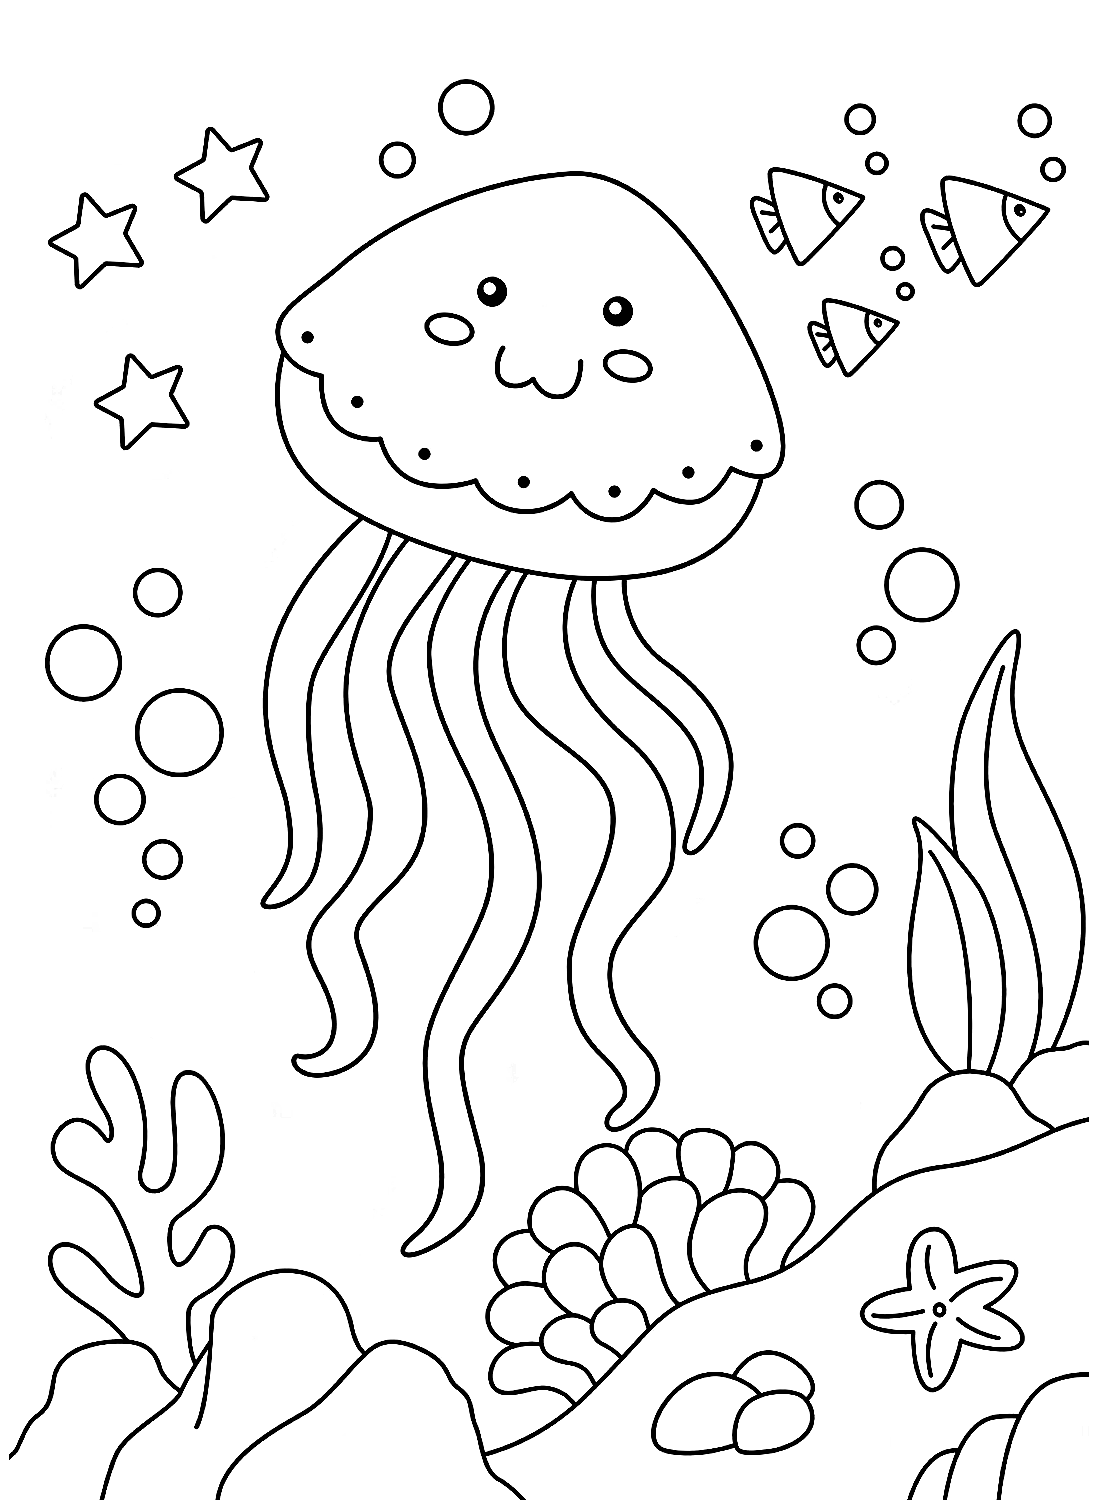 Pagina da colorare di meduse gratis